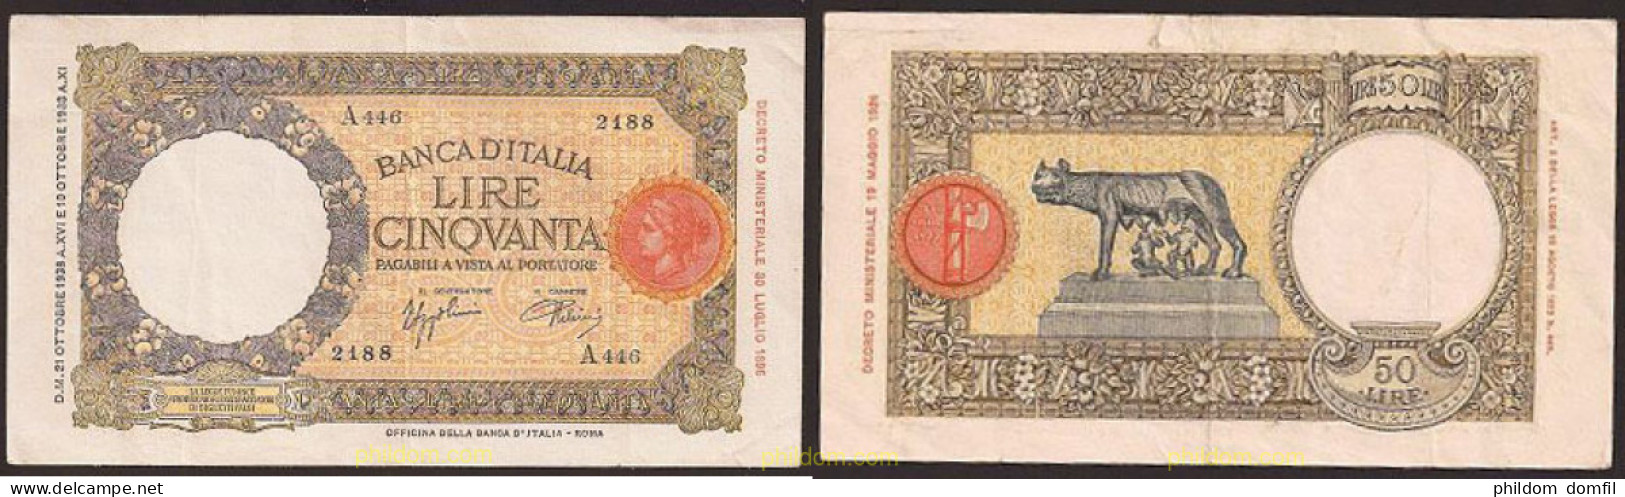 118 ITALIA 1938 50 Lire BANCONOTA DA LIRE 50 VITTORIO EMANUELE III OFFICINA L'AQUILA - Biglietto Consorziale